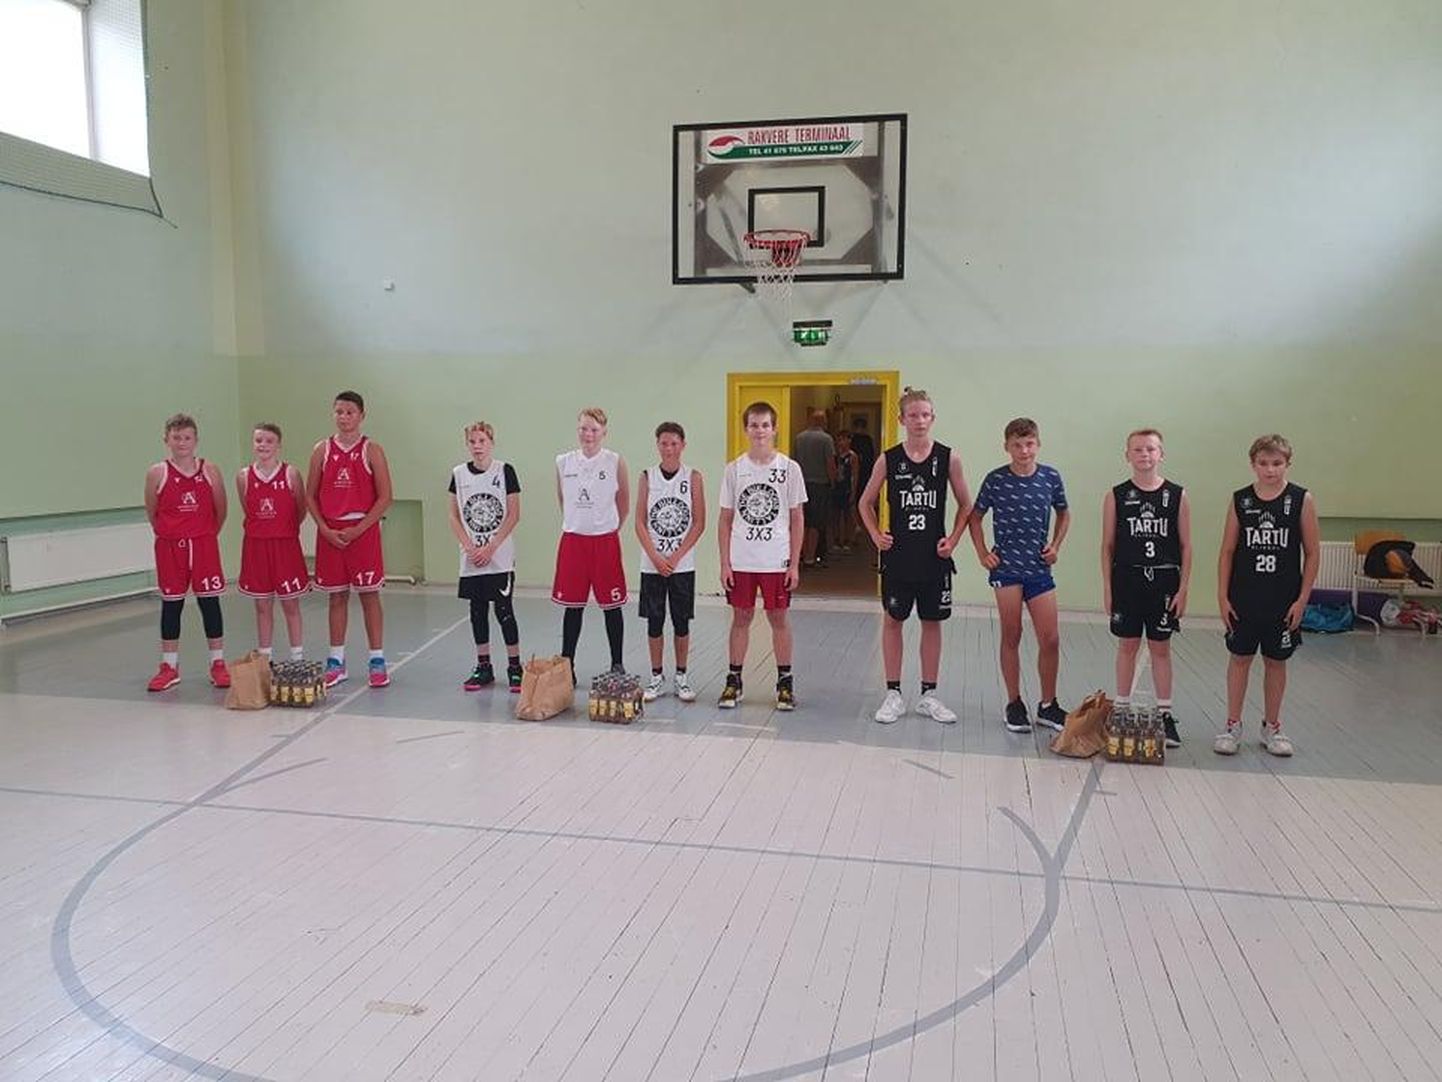 Kadrina keskkooli võimlas toimunud U13 vanuseklassi turniiril väljusid võitjatena Tallinna Buldogide võistkond, kes finaalis alistas punktilise paremusega (13:12) võistkonna Aude Nations. Pronksikohtumise võitis võistkond Lambad.